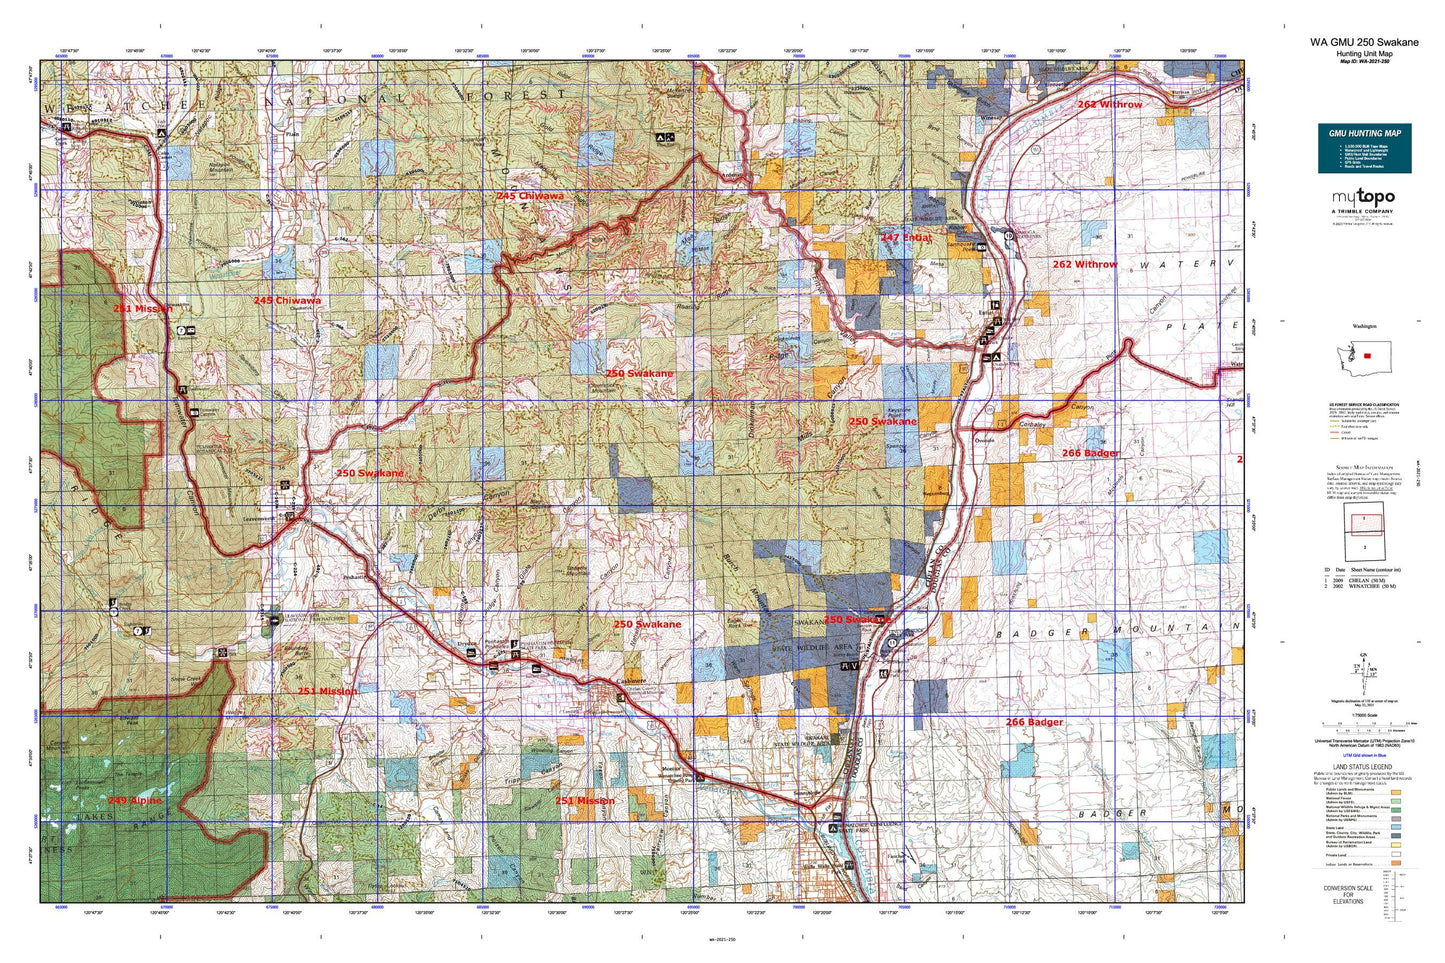 Washington GMU 250 Swakane Map Image